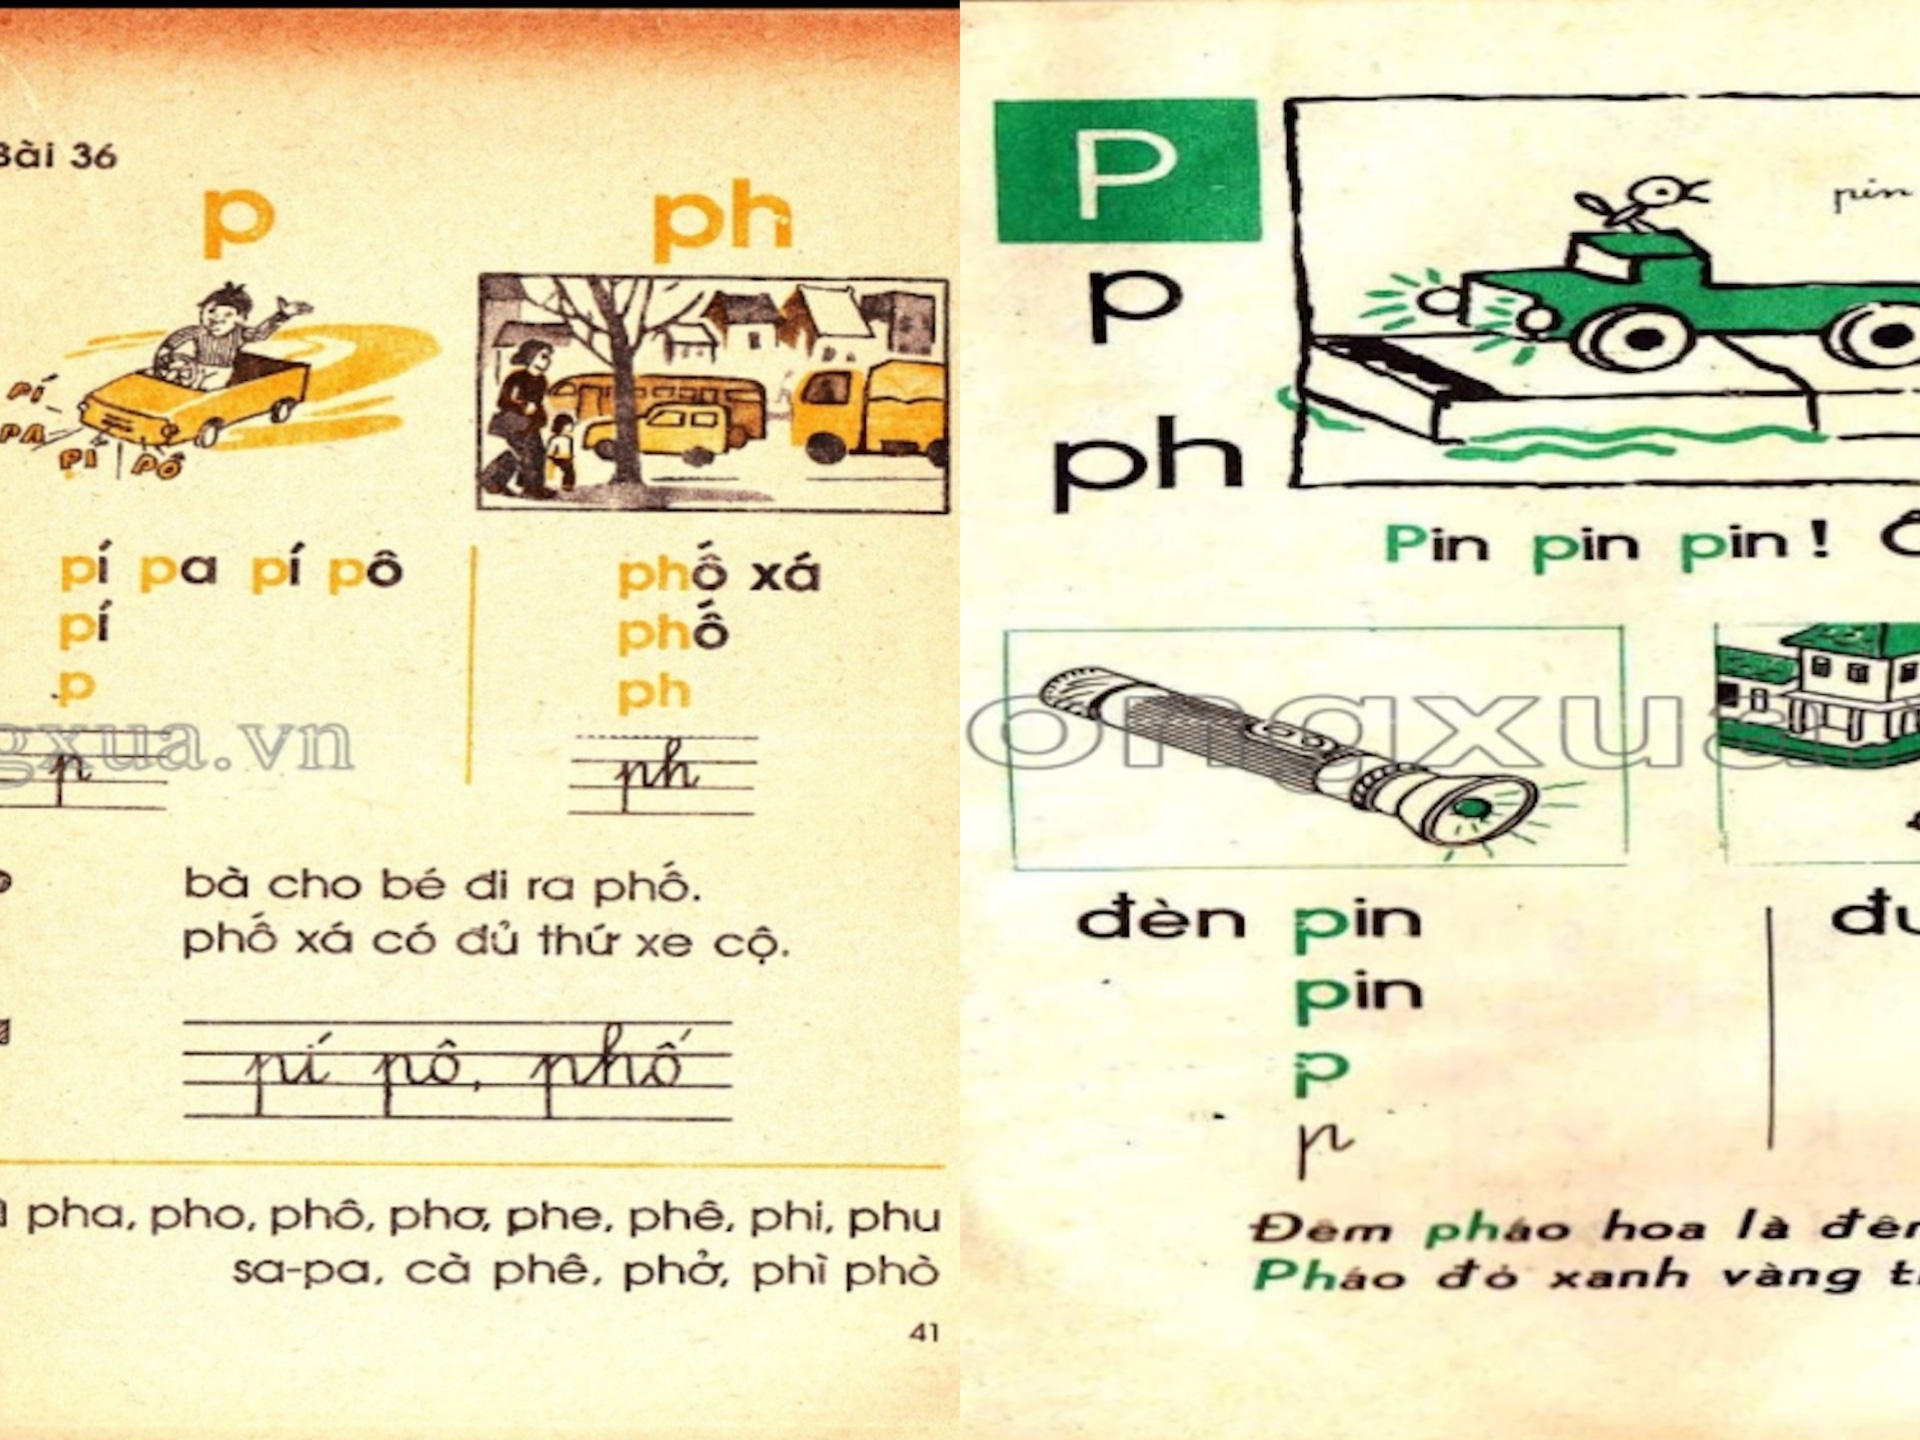 Tiếng Việt 1 không dạy chữ P: 'Cải tiến hoá cải lùi, sai lầm nghiêm trọng' - Ảnh 2.